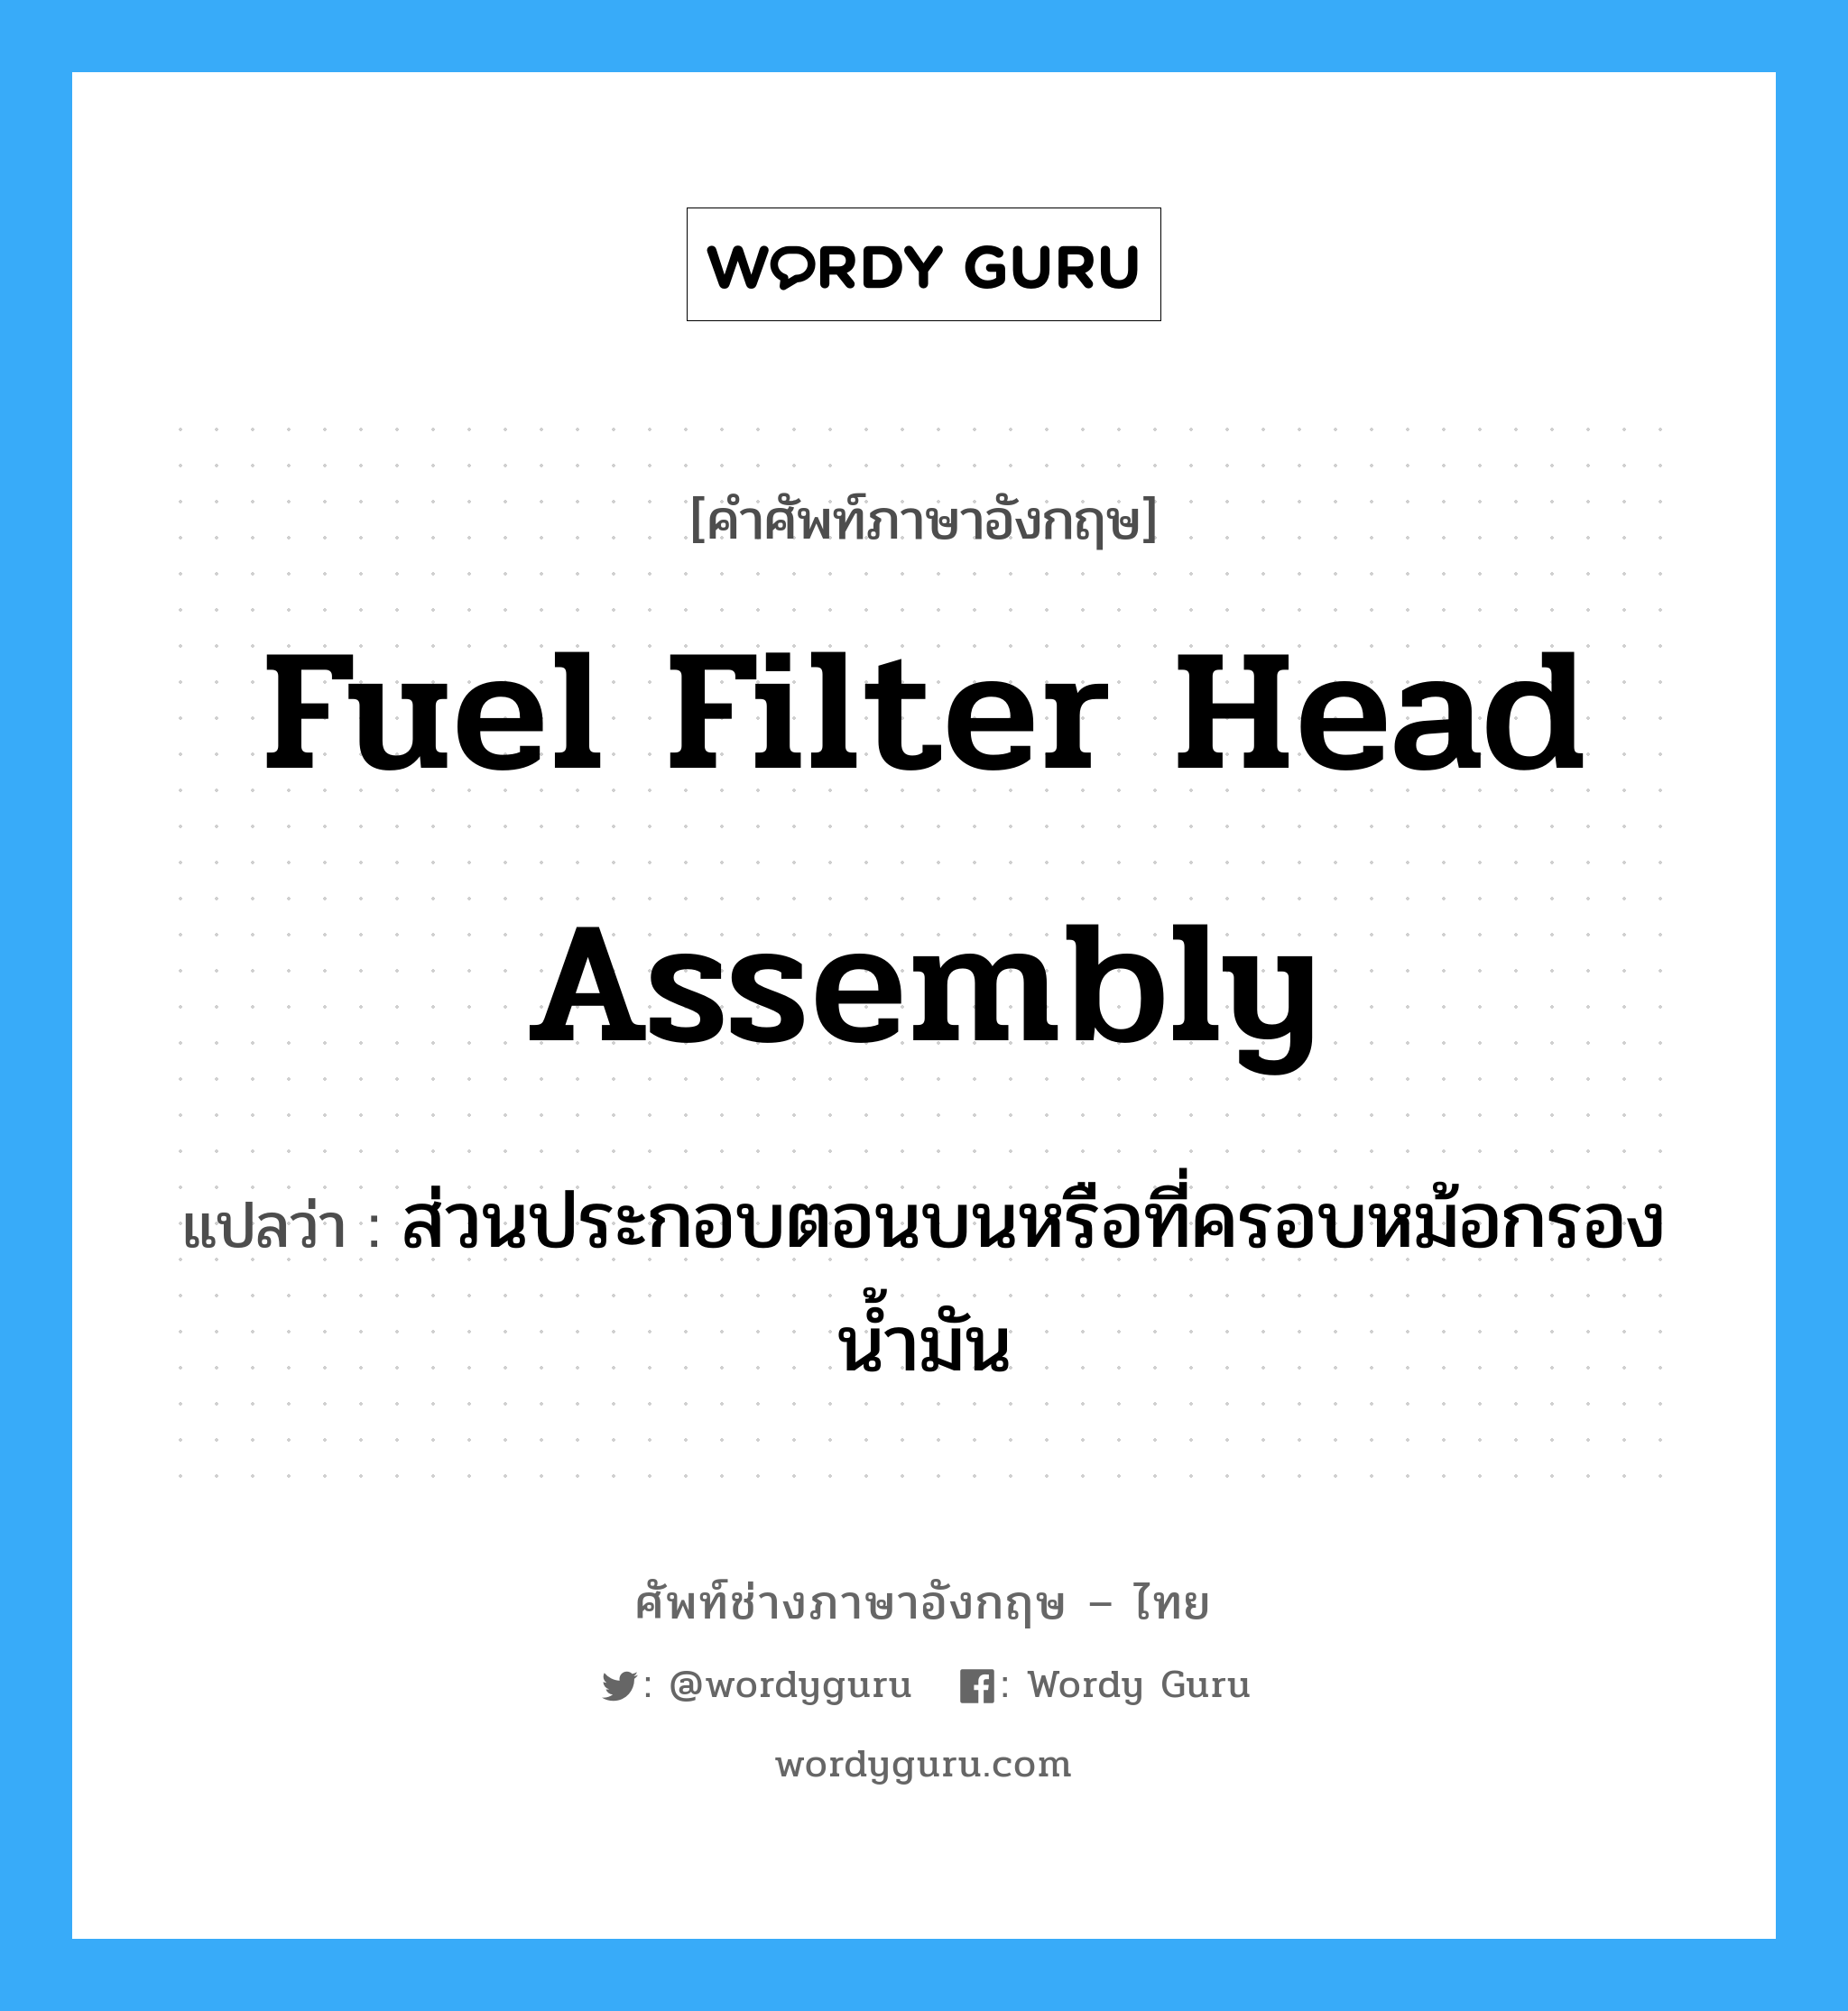 fuel filter head assembly แปลว่า?, คำศัพท์ช่างภาษาอังกฤษ - ไทย fuel filter head assembly คำศัพท์ภาษาอังกฤษ fuel filter head assembly แปลว่า ส่วนประกอบตอนบนหรือที่ครอบหม้อกรองน้ำมัน